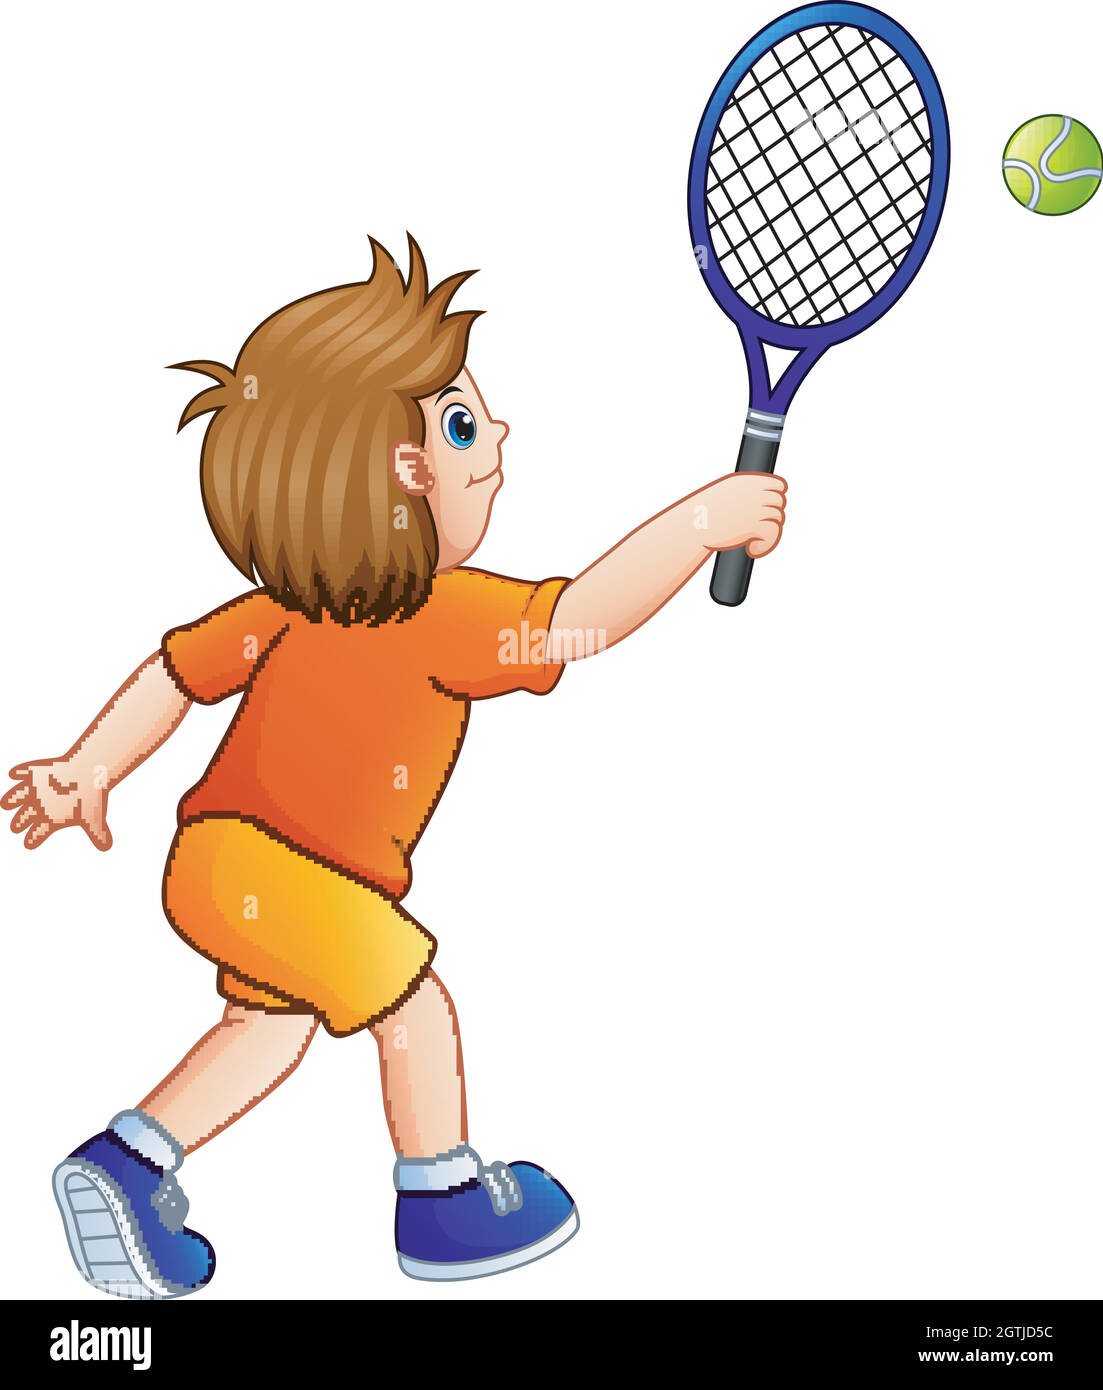 Niedlicher kleiner Junge spielt Tennis auf weißem Hintergrund Stock Vektor